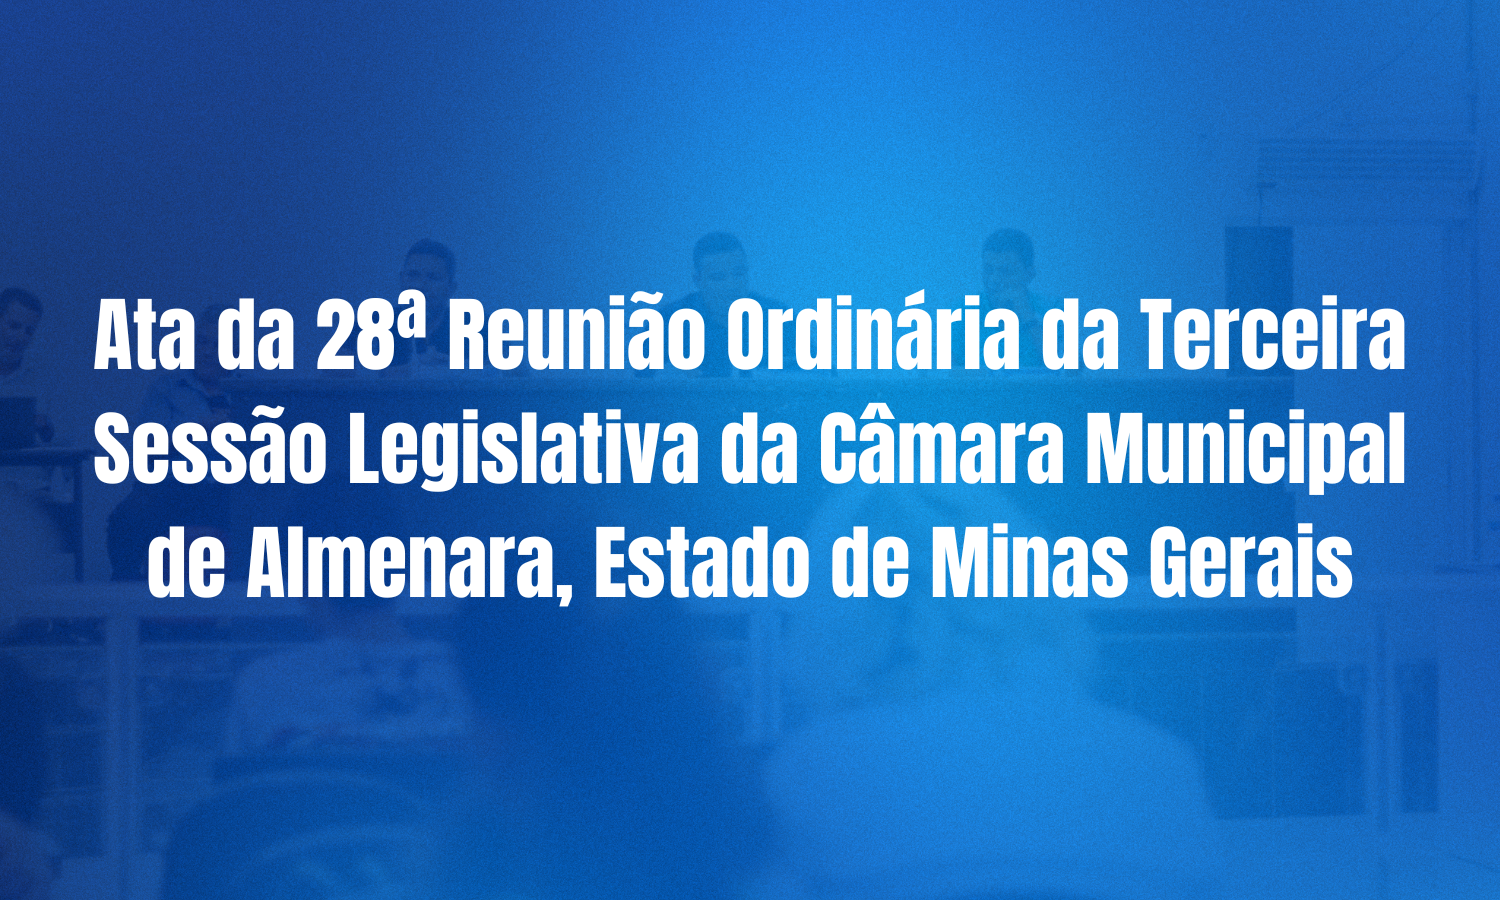 Ata da 28ª Reunião Ordinária da Terceira Sessão Legislativa da Câmara Municipal de Almenara, Estado de Minas Gerais